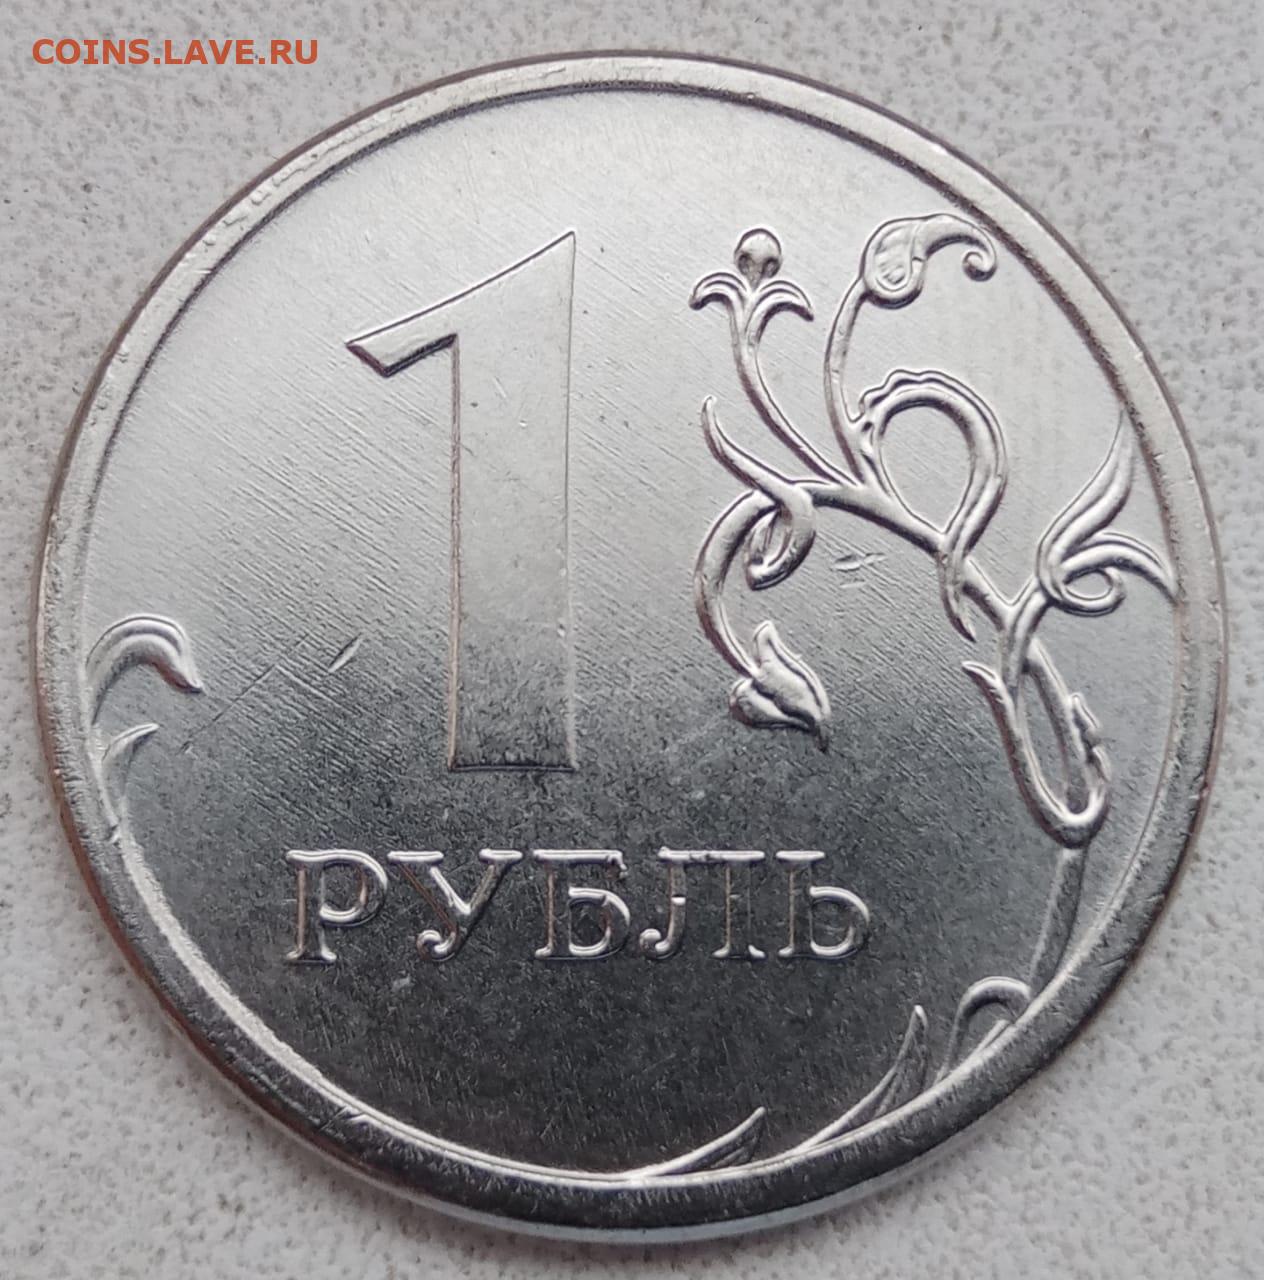 5 рублей 2021. Монета рубль 2021. Монета 1 рубль 2021. Один рубль 2021 года. Редкие монеты 1 рубль 2021 года.